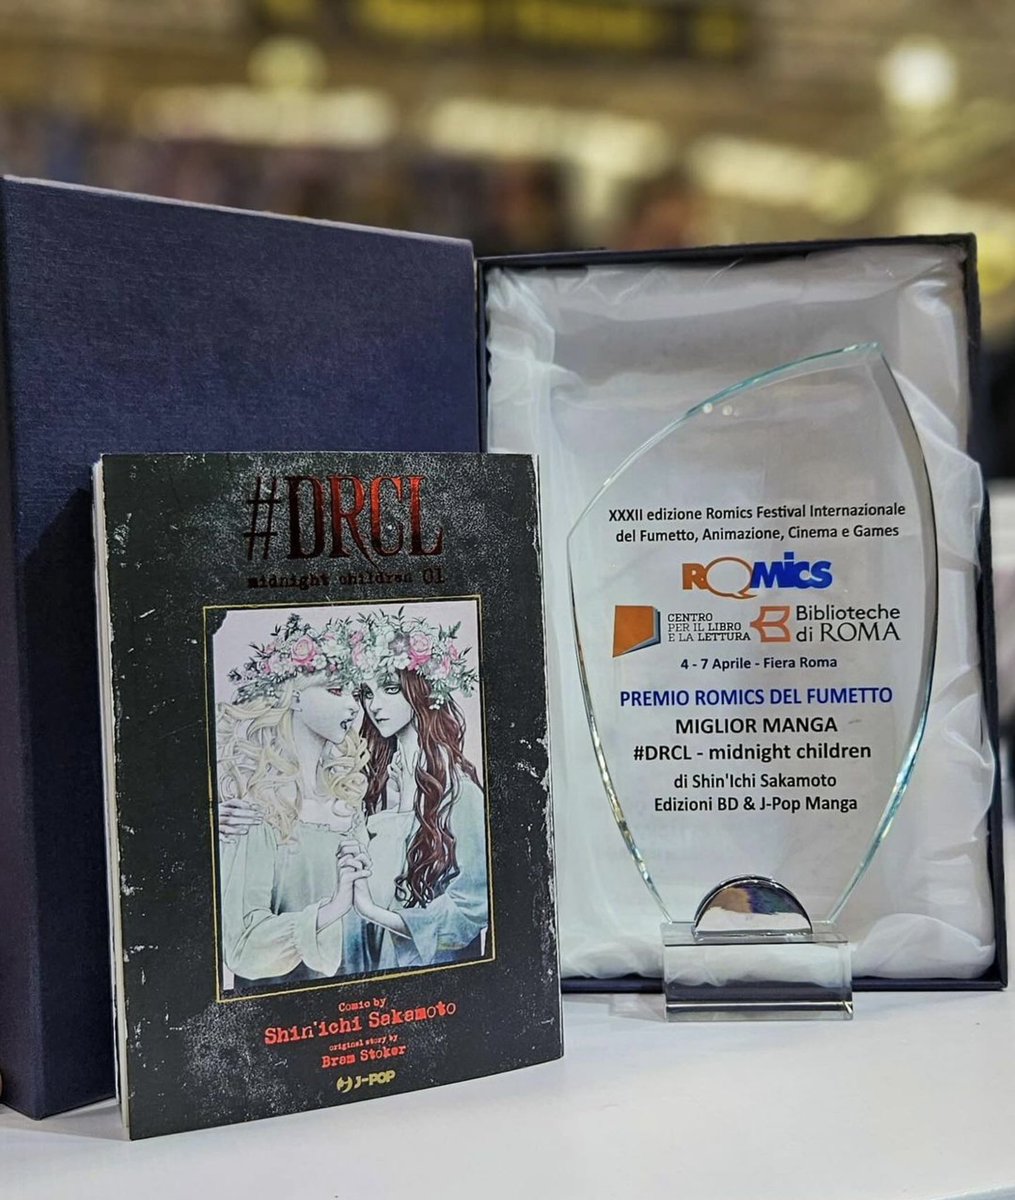 イタリアで開催された国際ロミックフェスティバルで『#DRCL midnight children』がベスト漫画を受賞したようです！ありがとうございます！

#DRCL #BramStoker #shinichisakamoto #Dracula #jpopmanga